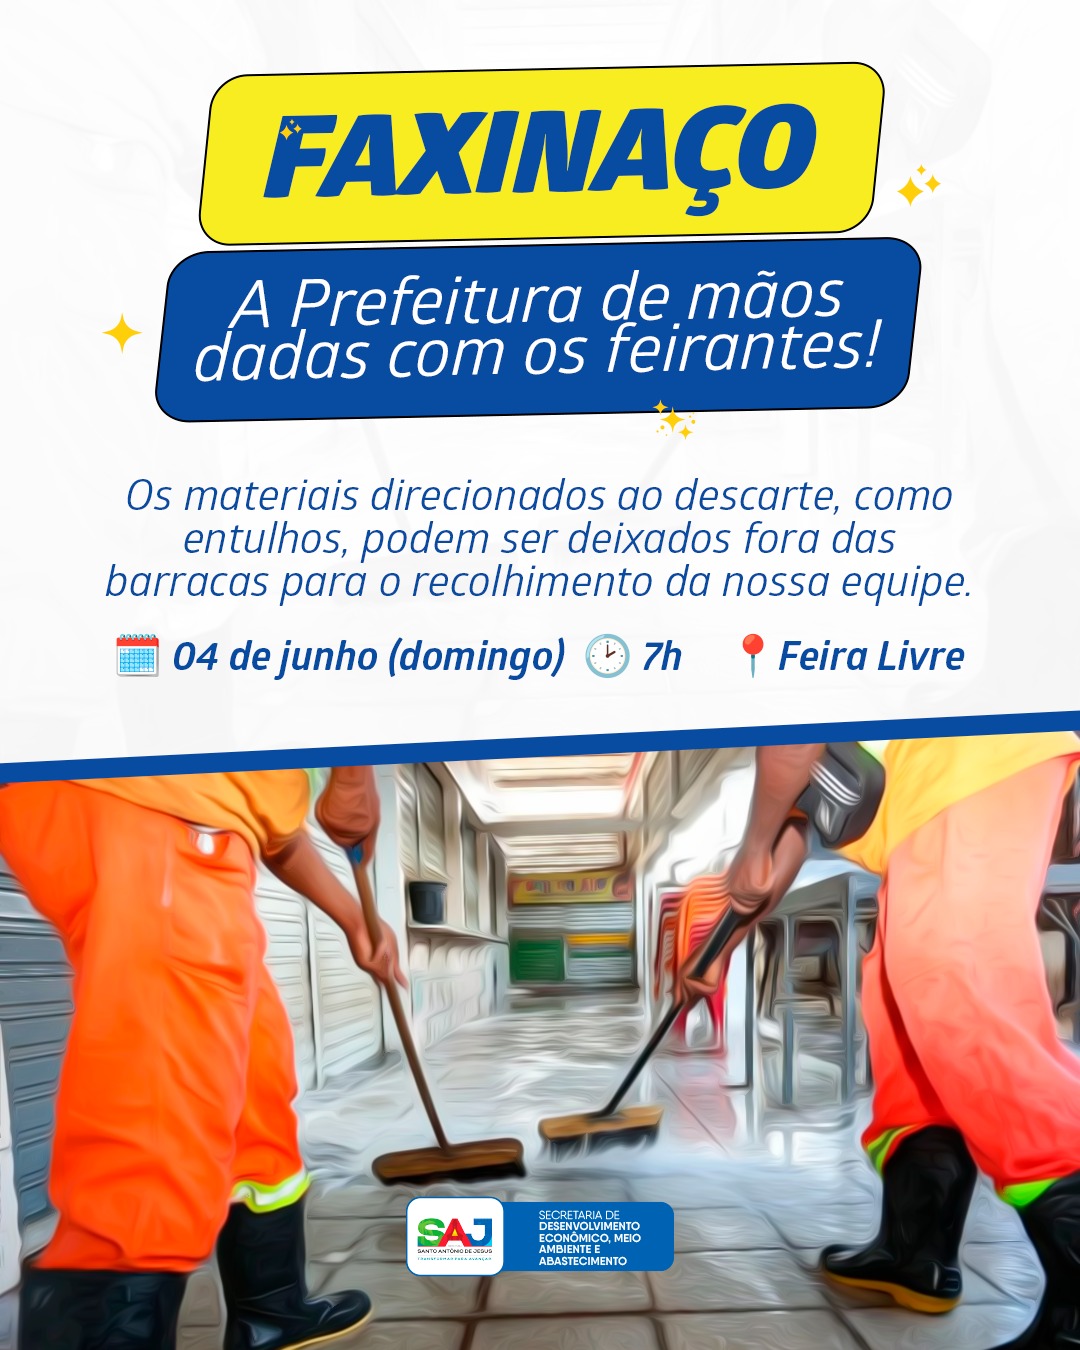 Prefeitura realizará, no domingo (04), faxinaço na Feira Livre de Santo Antônio de Jesus